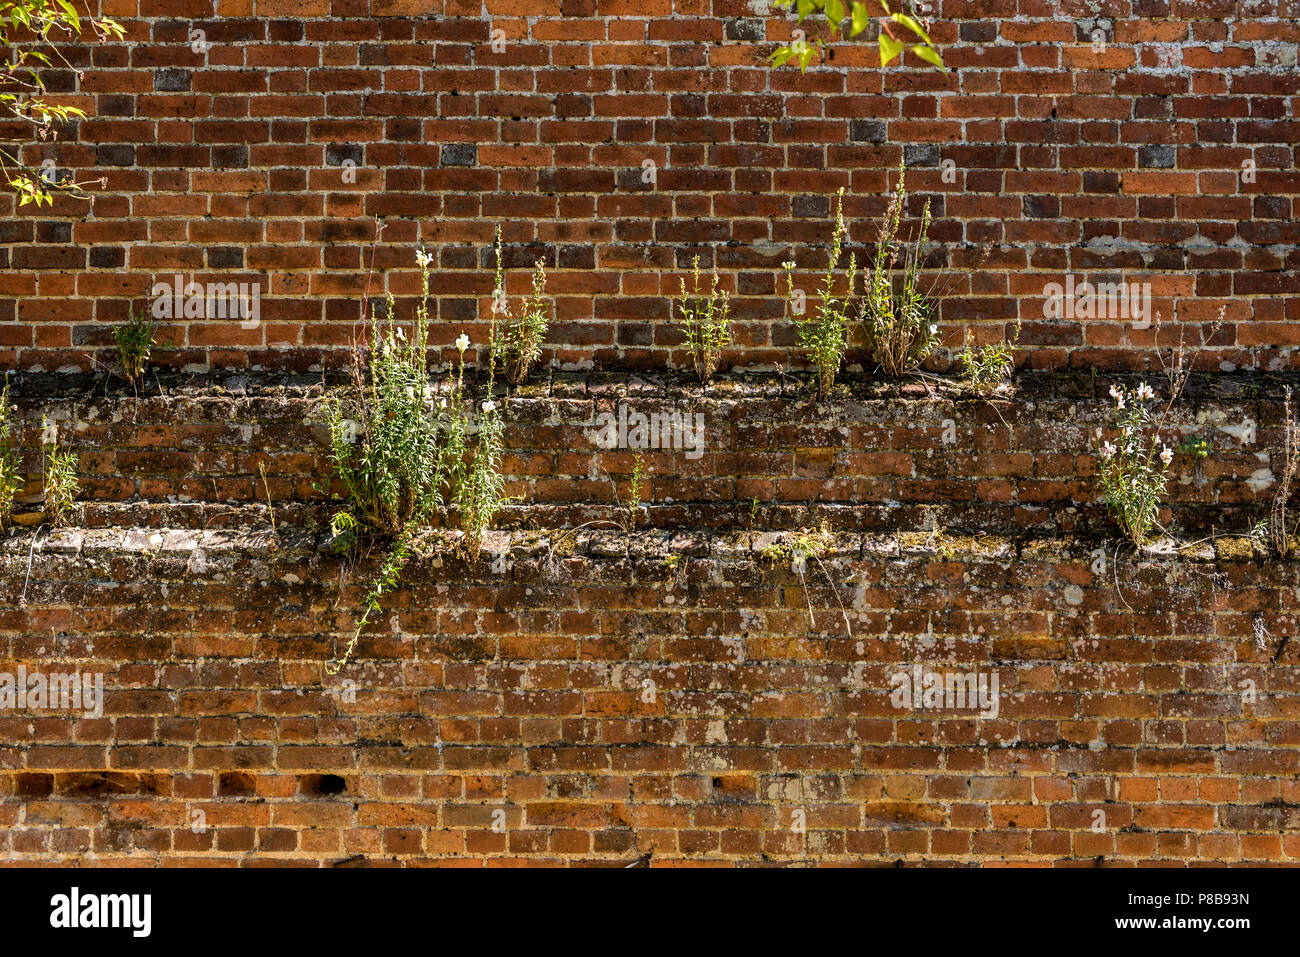 Jardins et Arboretum de marques Coggeshall Colchester, Essex, UK.18e siècle en brique-mur.1700, l'architecture, à la maçonnerie. Vieux Mur de fleurs Banque D'Images